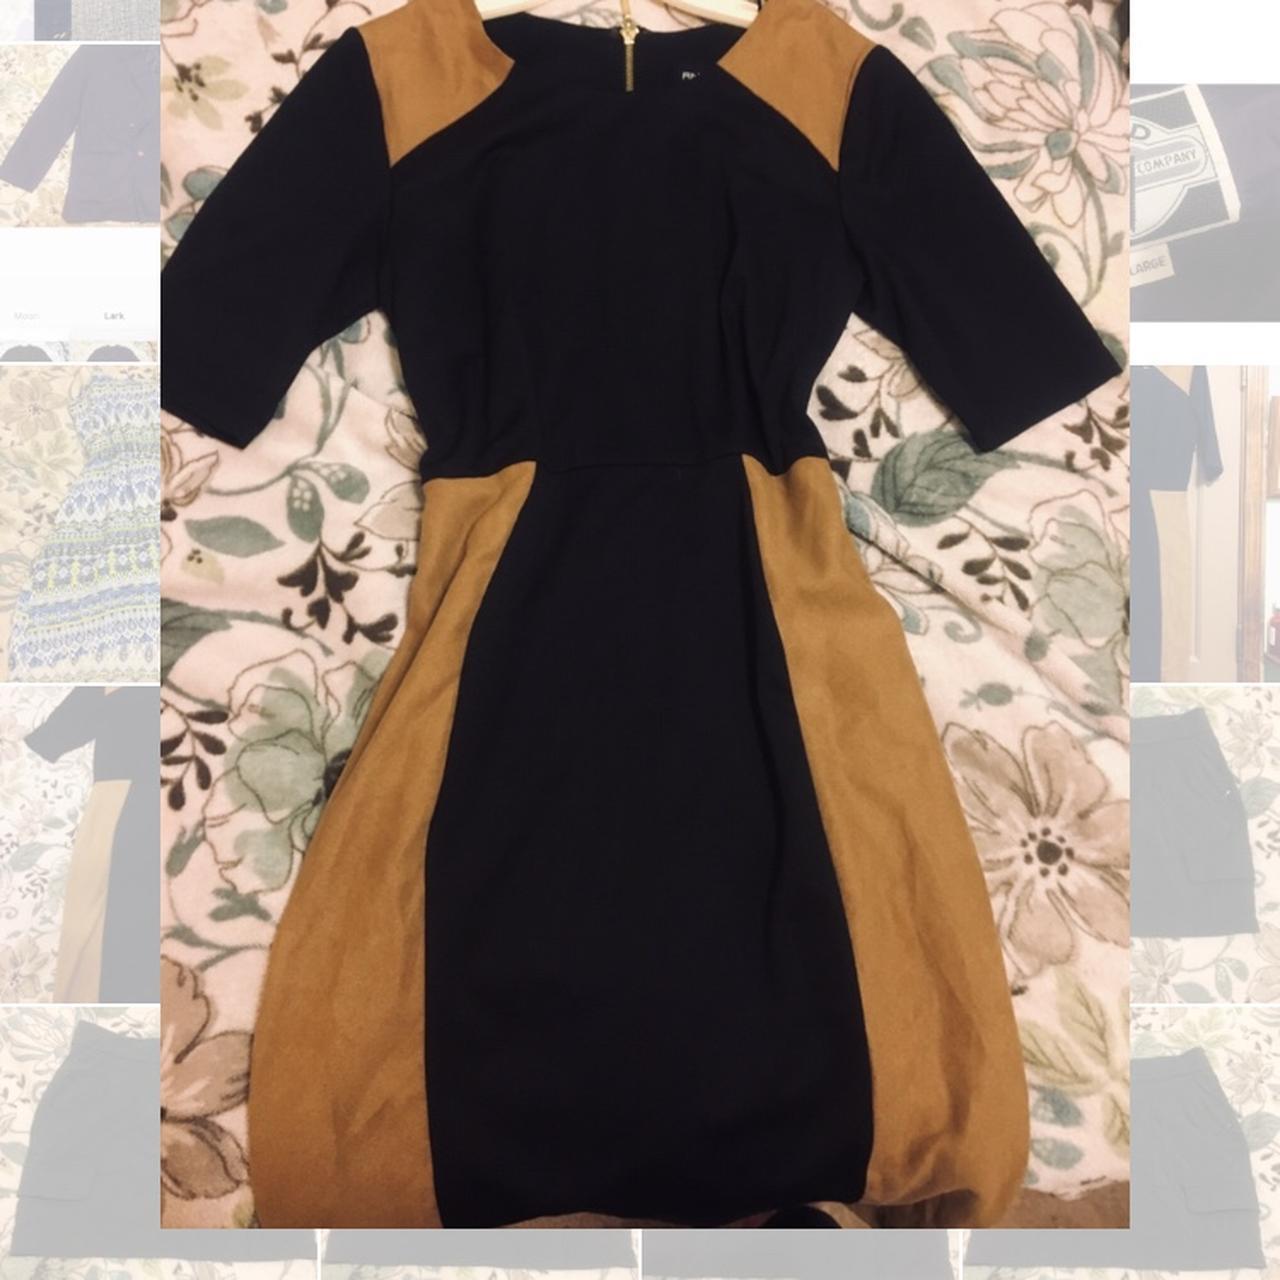 Color Block Dress in Tan & Black